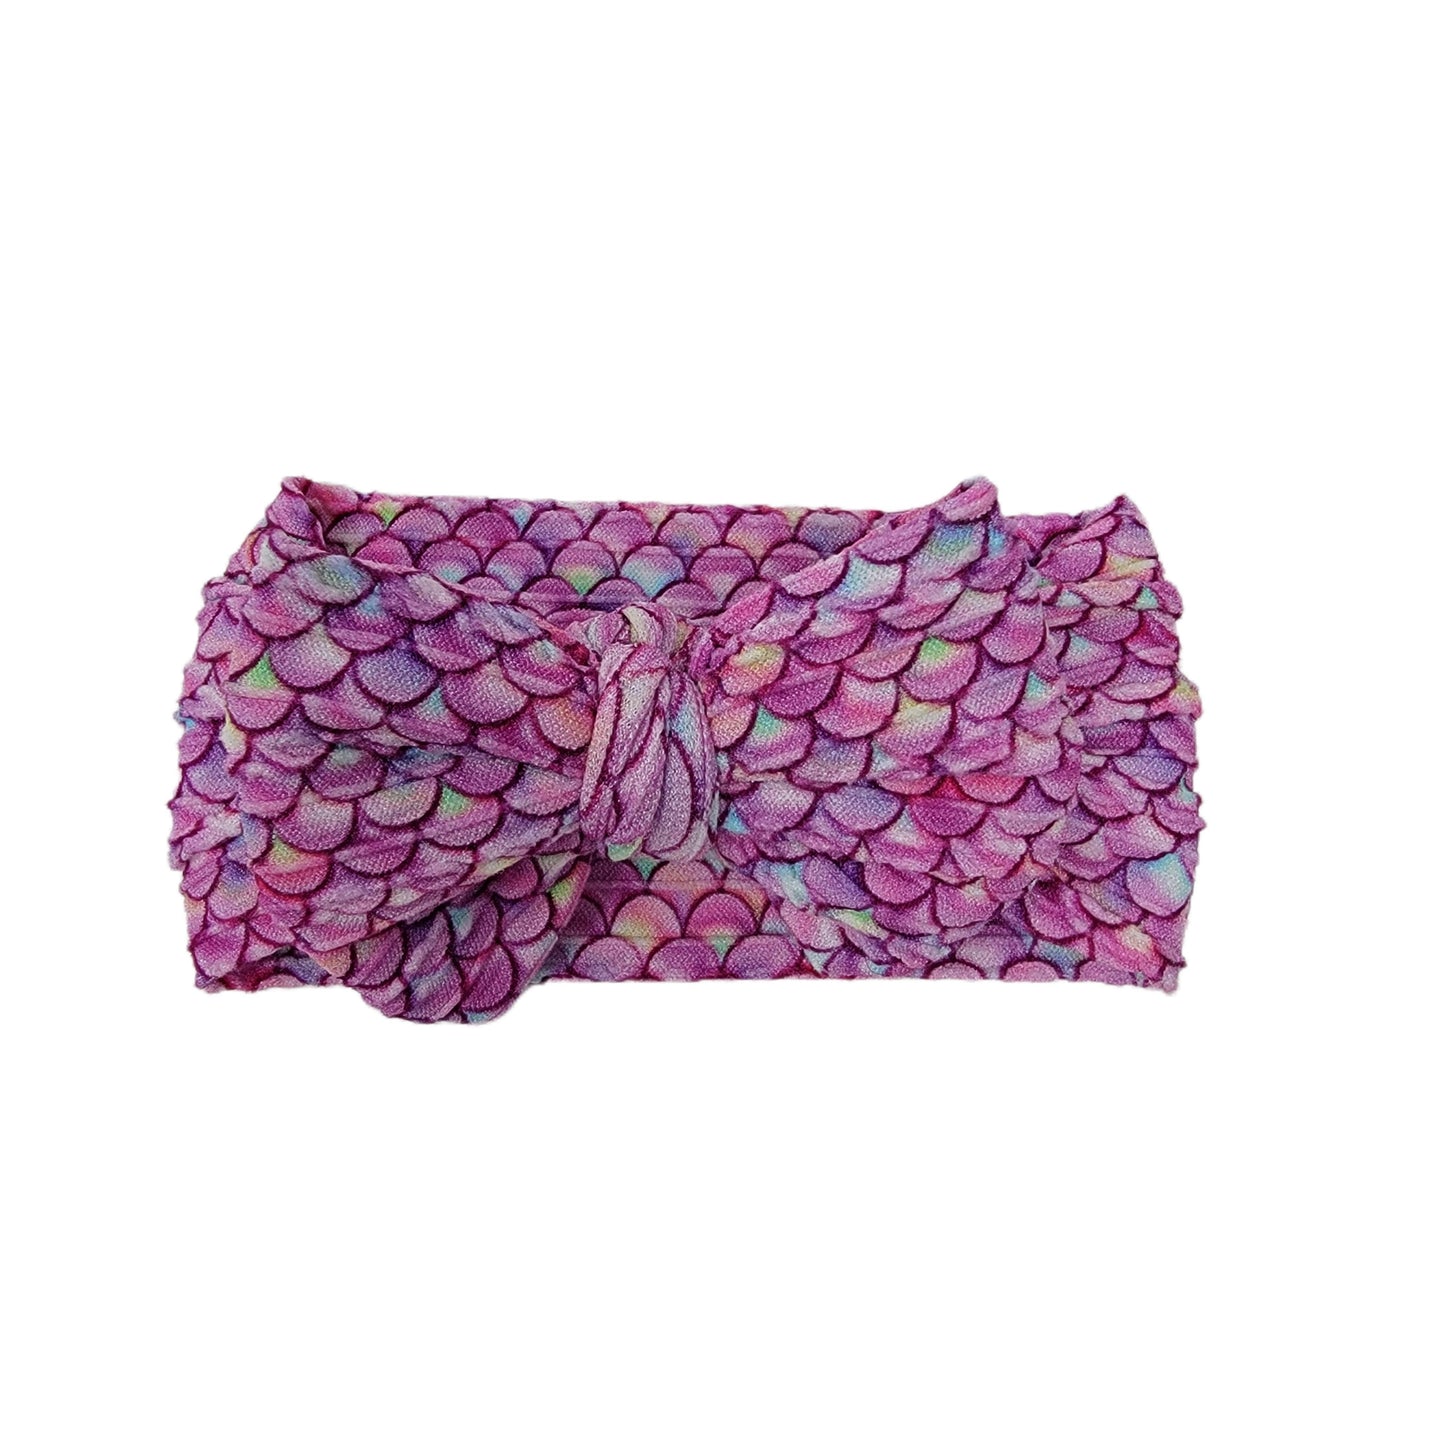 Pink Mermaid Braid Knit Fabric Headwrap 4" 